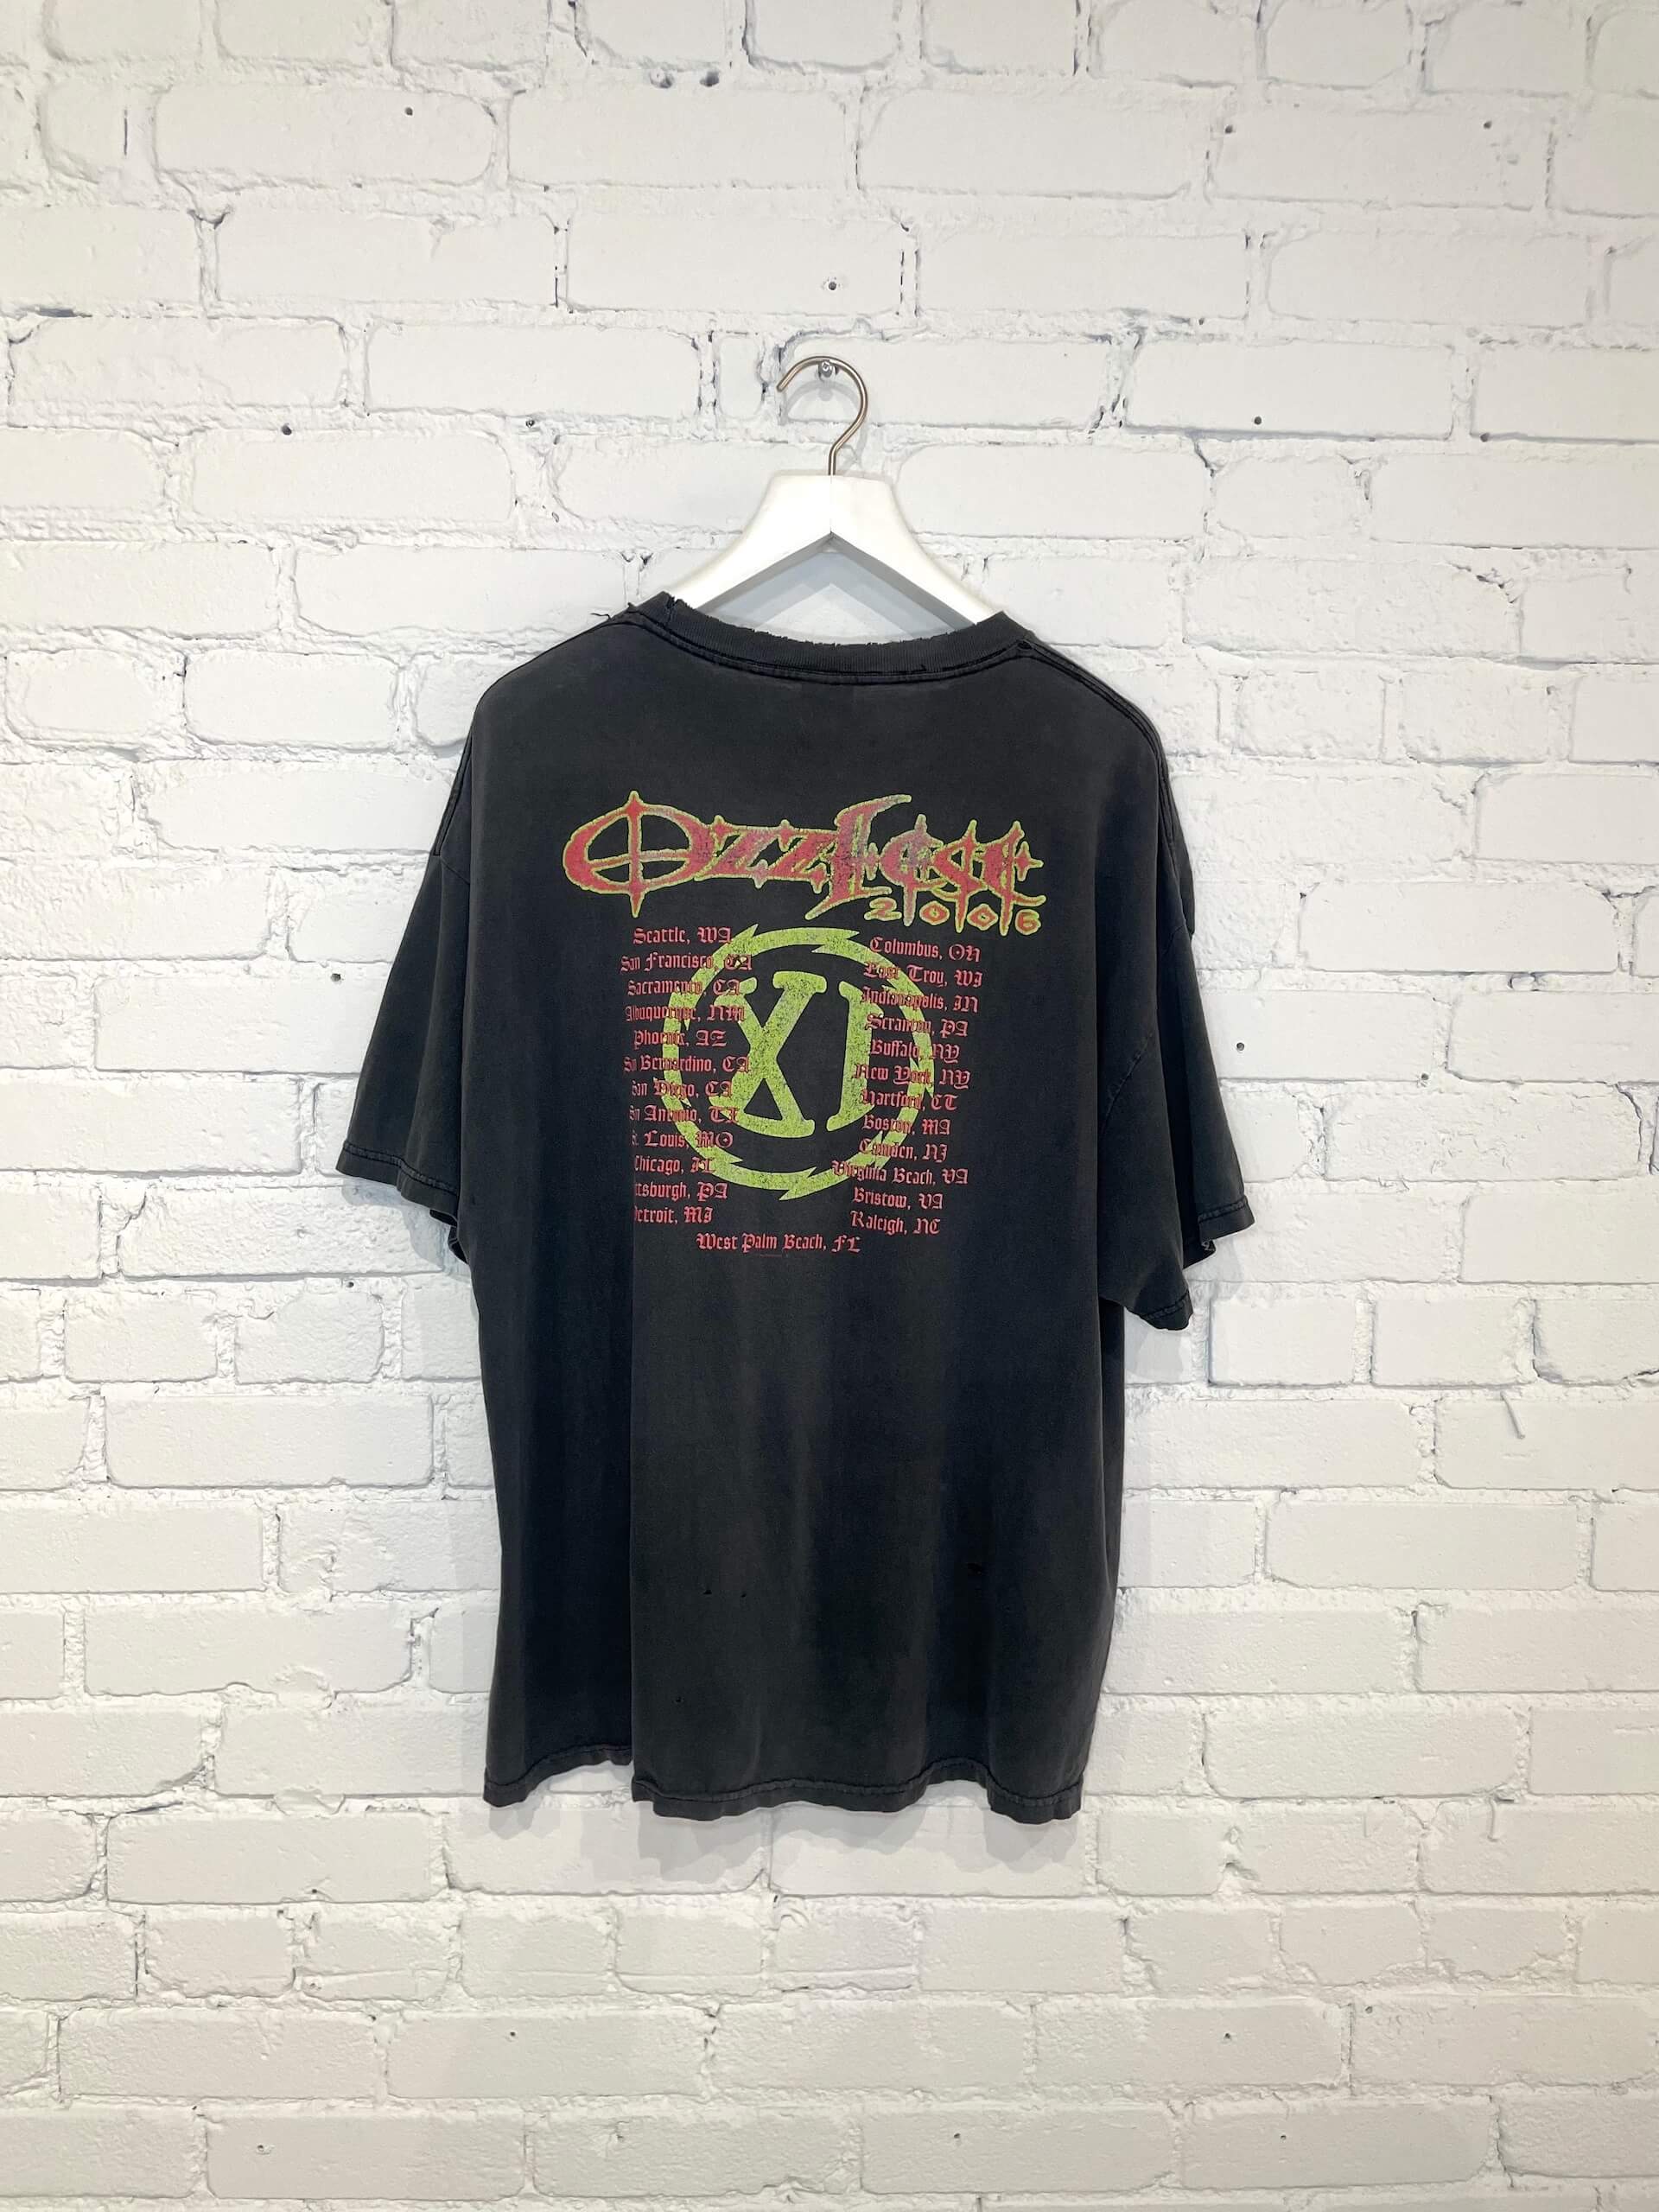 2006 Ozzfest Tshirt